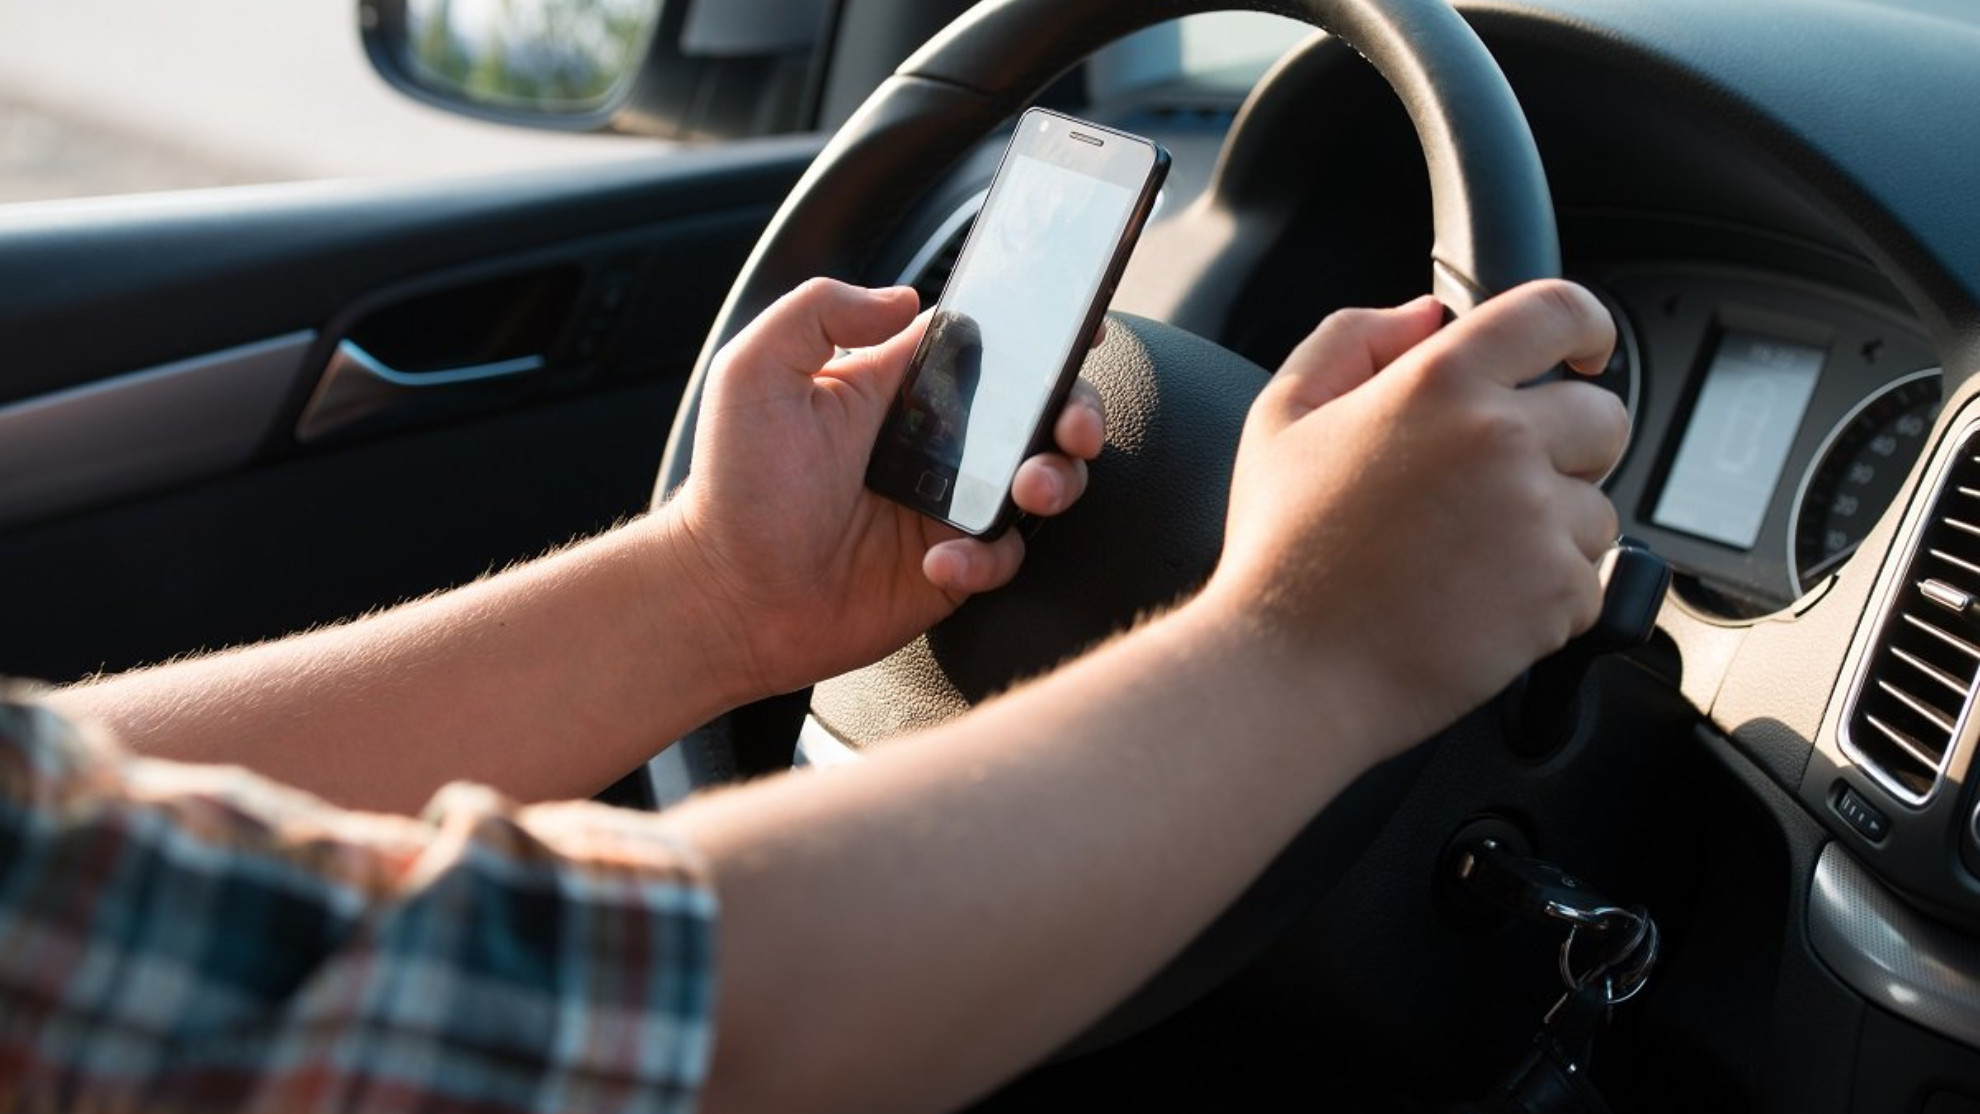 Utilizar el móvil en atascos o semaforos - Soporte para movil - Usar el movil en el coche